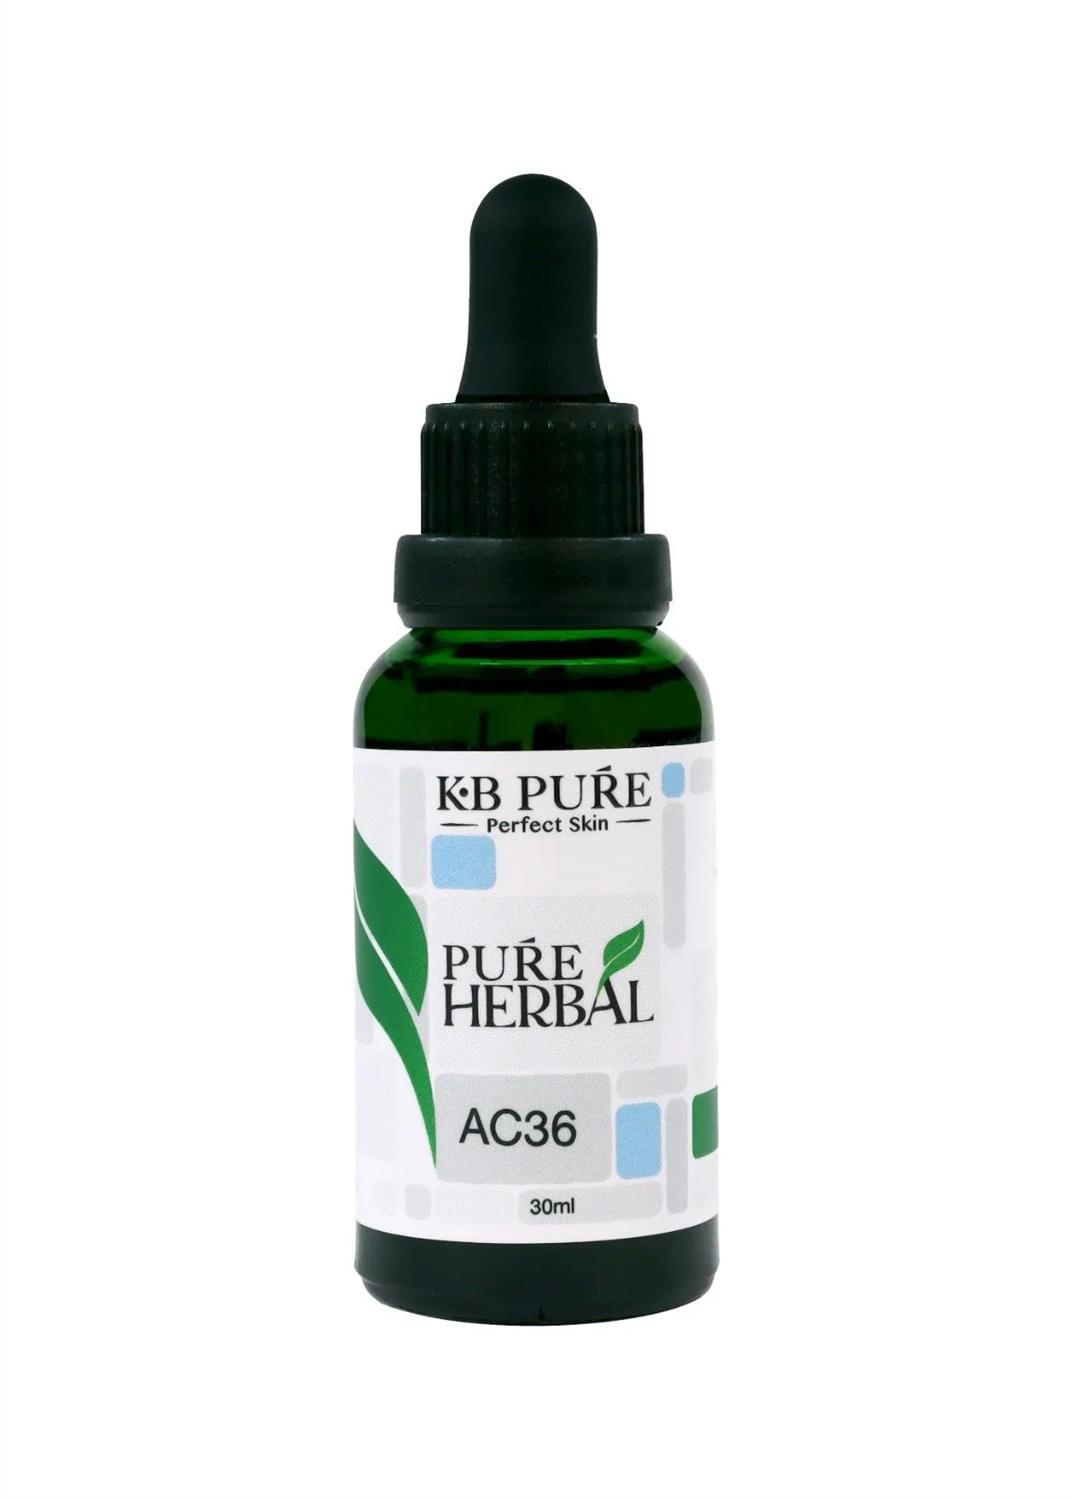 KB PURE - Detox hỗ trợ điều trị viêm da, giảm stress, trầm cảm,lo âu AC36 30ml